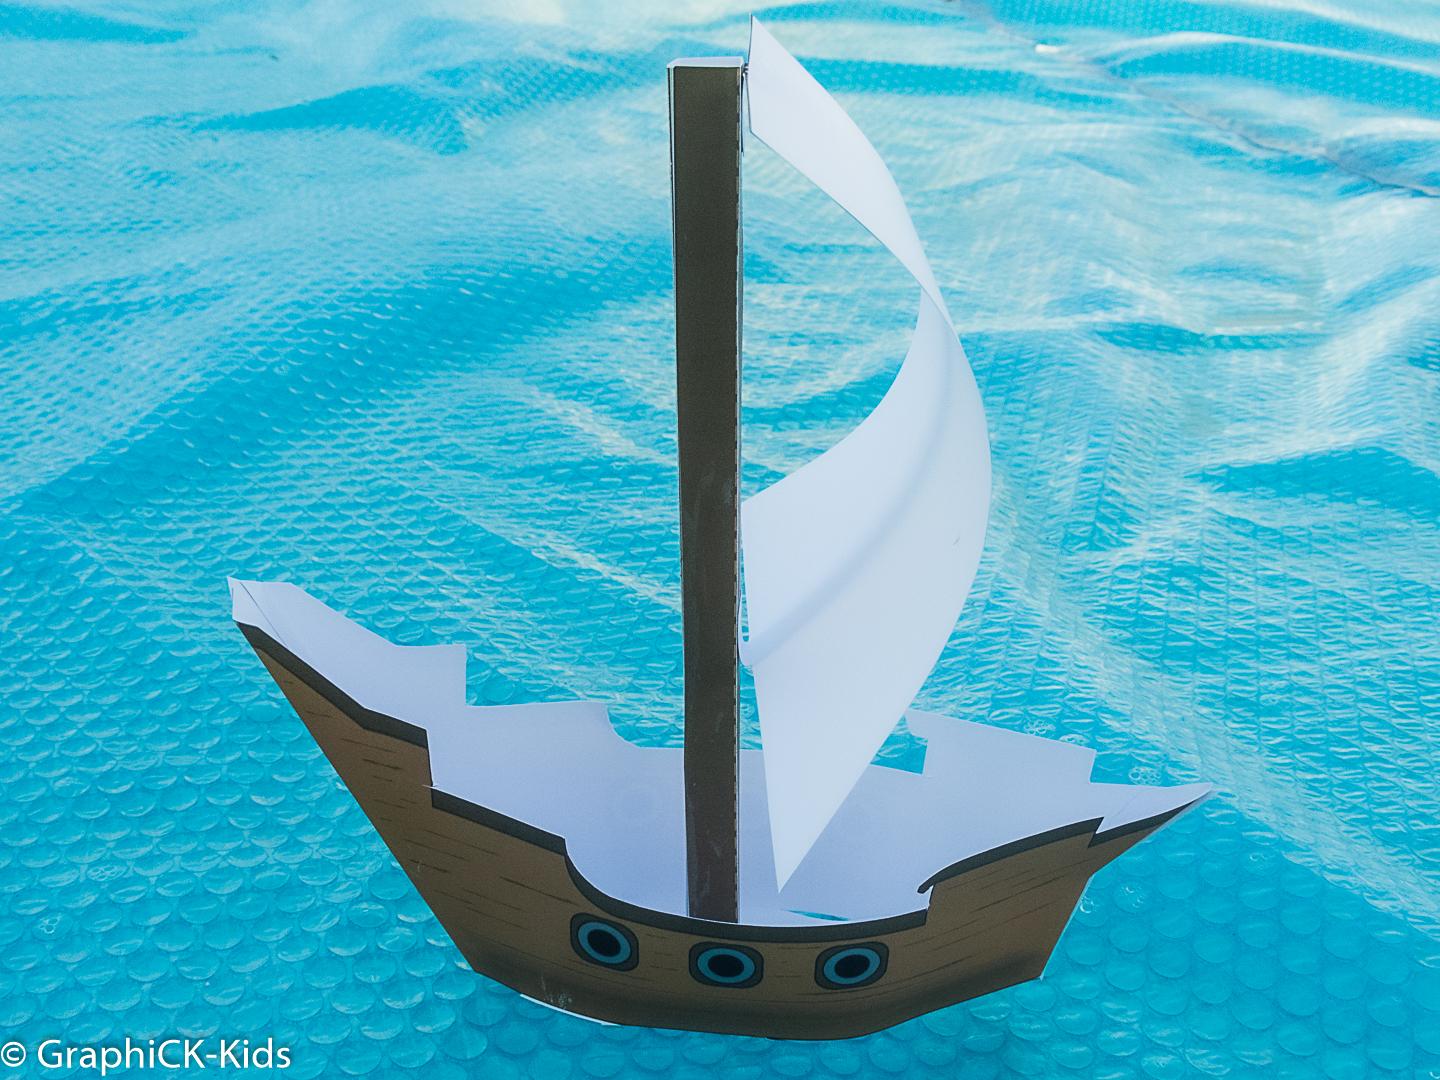 L’activité du mercredi : Je construis un bateau pirate